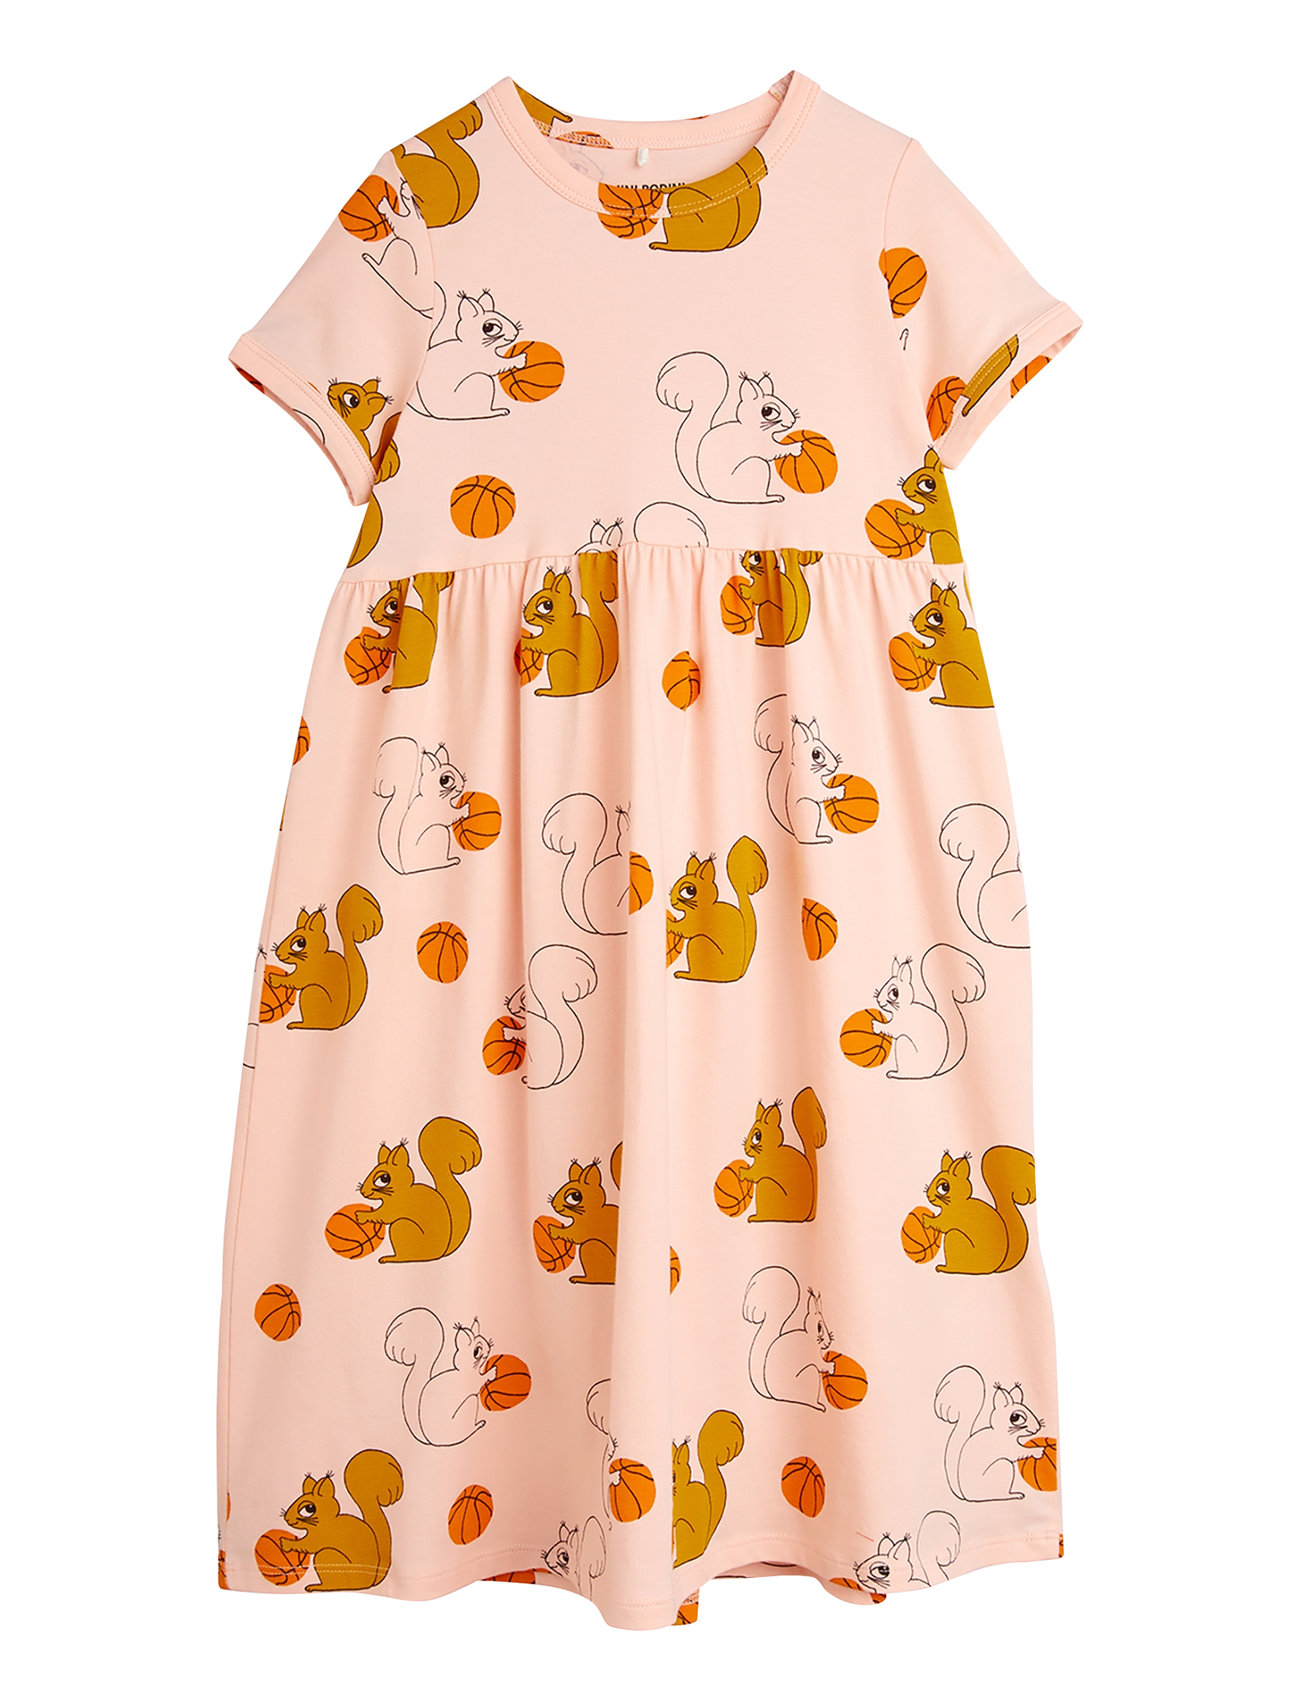 Squirrels Aop Ss Dress Dresses & Skirts Dresses Casual Dresses Short-sleeved Casual Dresses Pink Mini Rodini